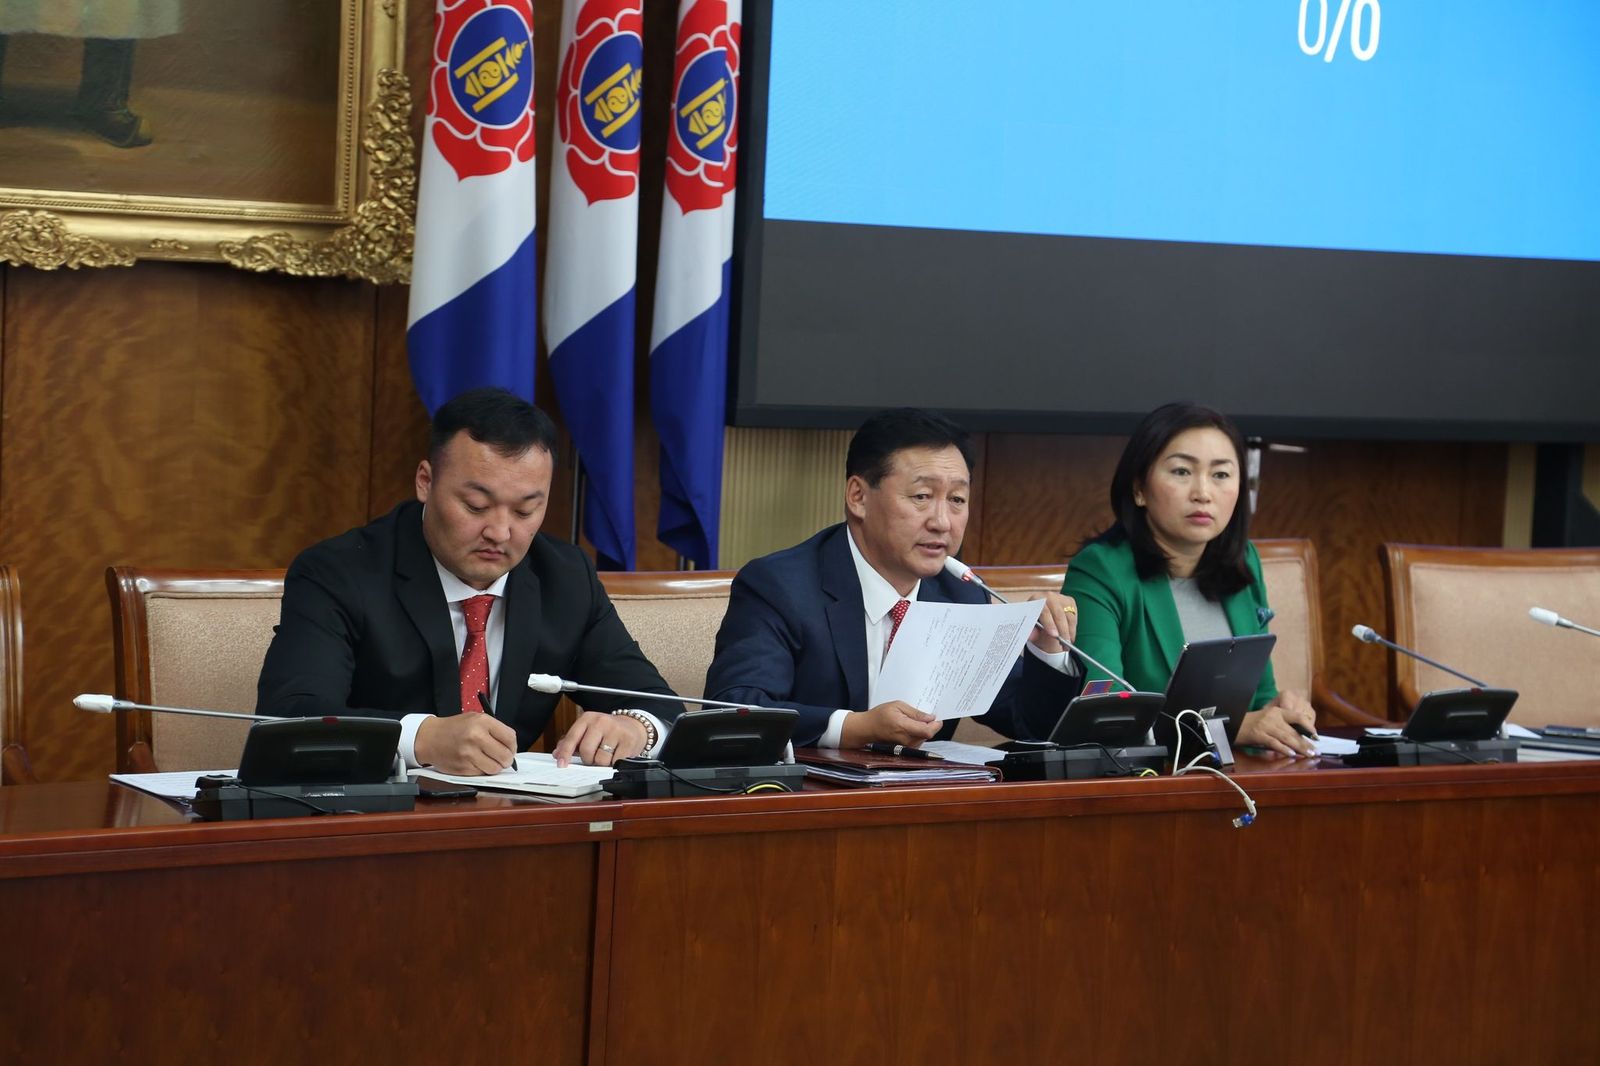 몽골인민당 그룹은 상임 위원회에서 각 가정에 100만 투그릭을 제공하려는 대통령의 계획을 논의하는 것이 옳다고 생각하여.jpg